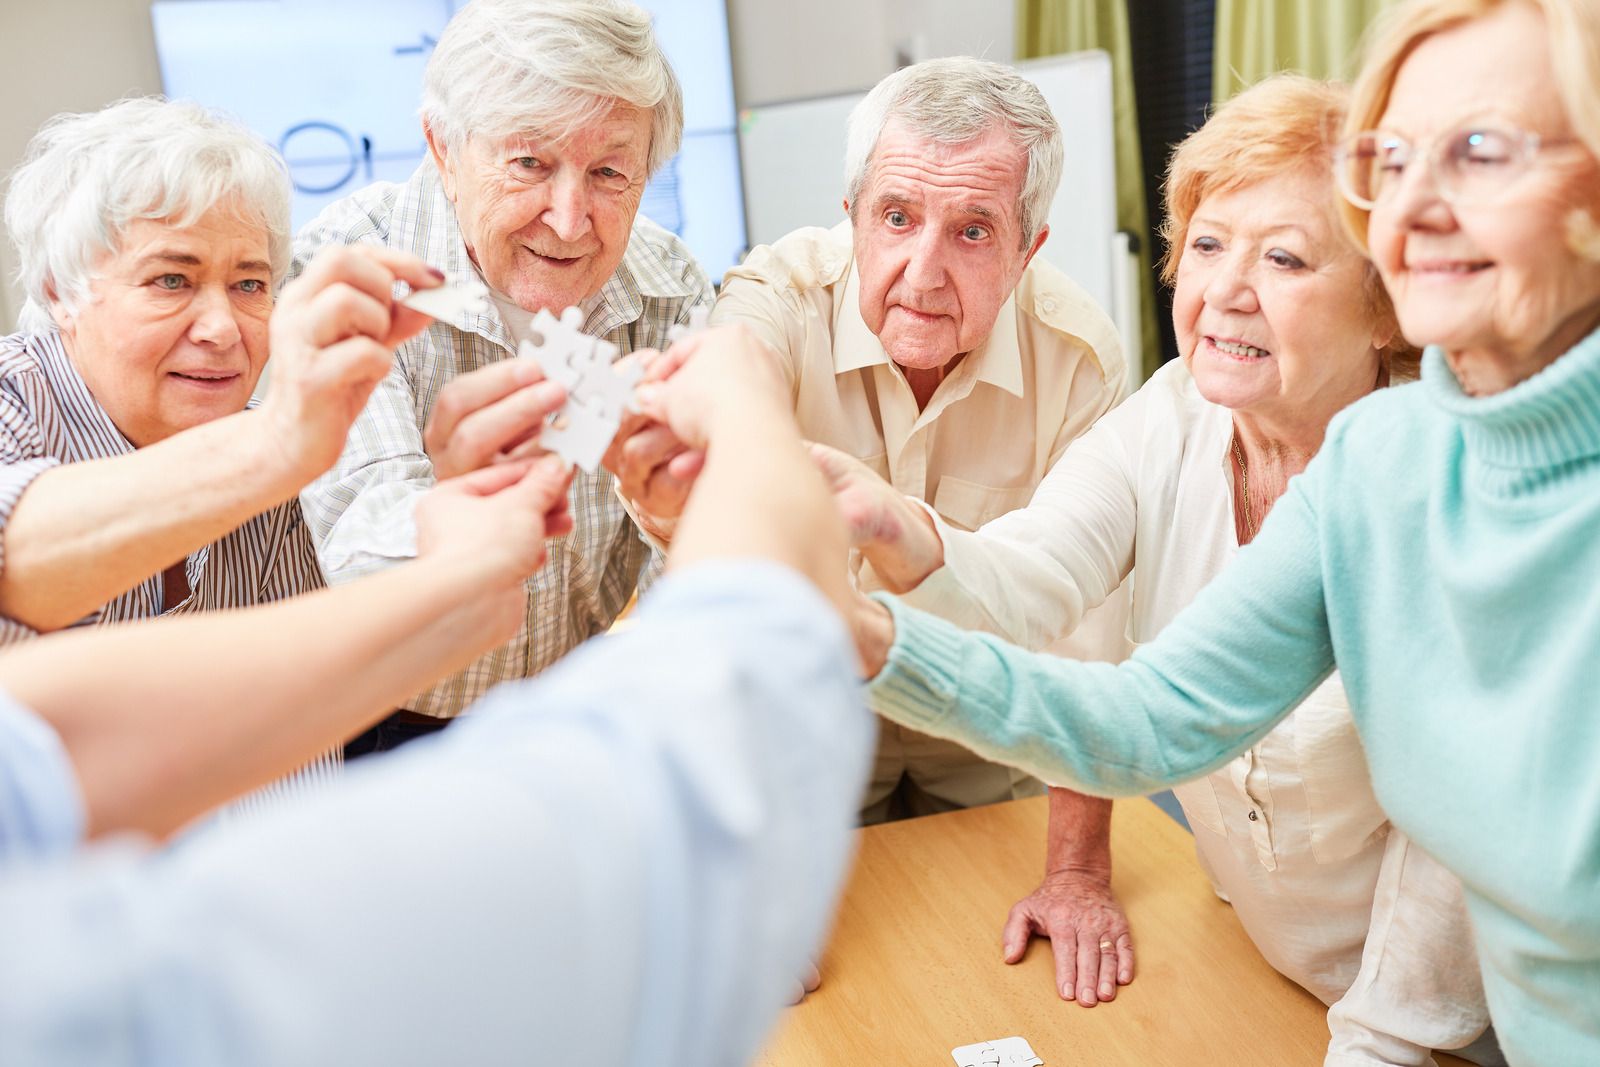 Projeto “Transformando Vidas 60+” vai capacitar idosos profissionalmente